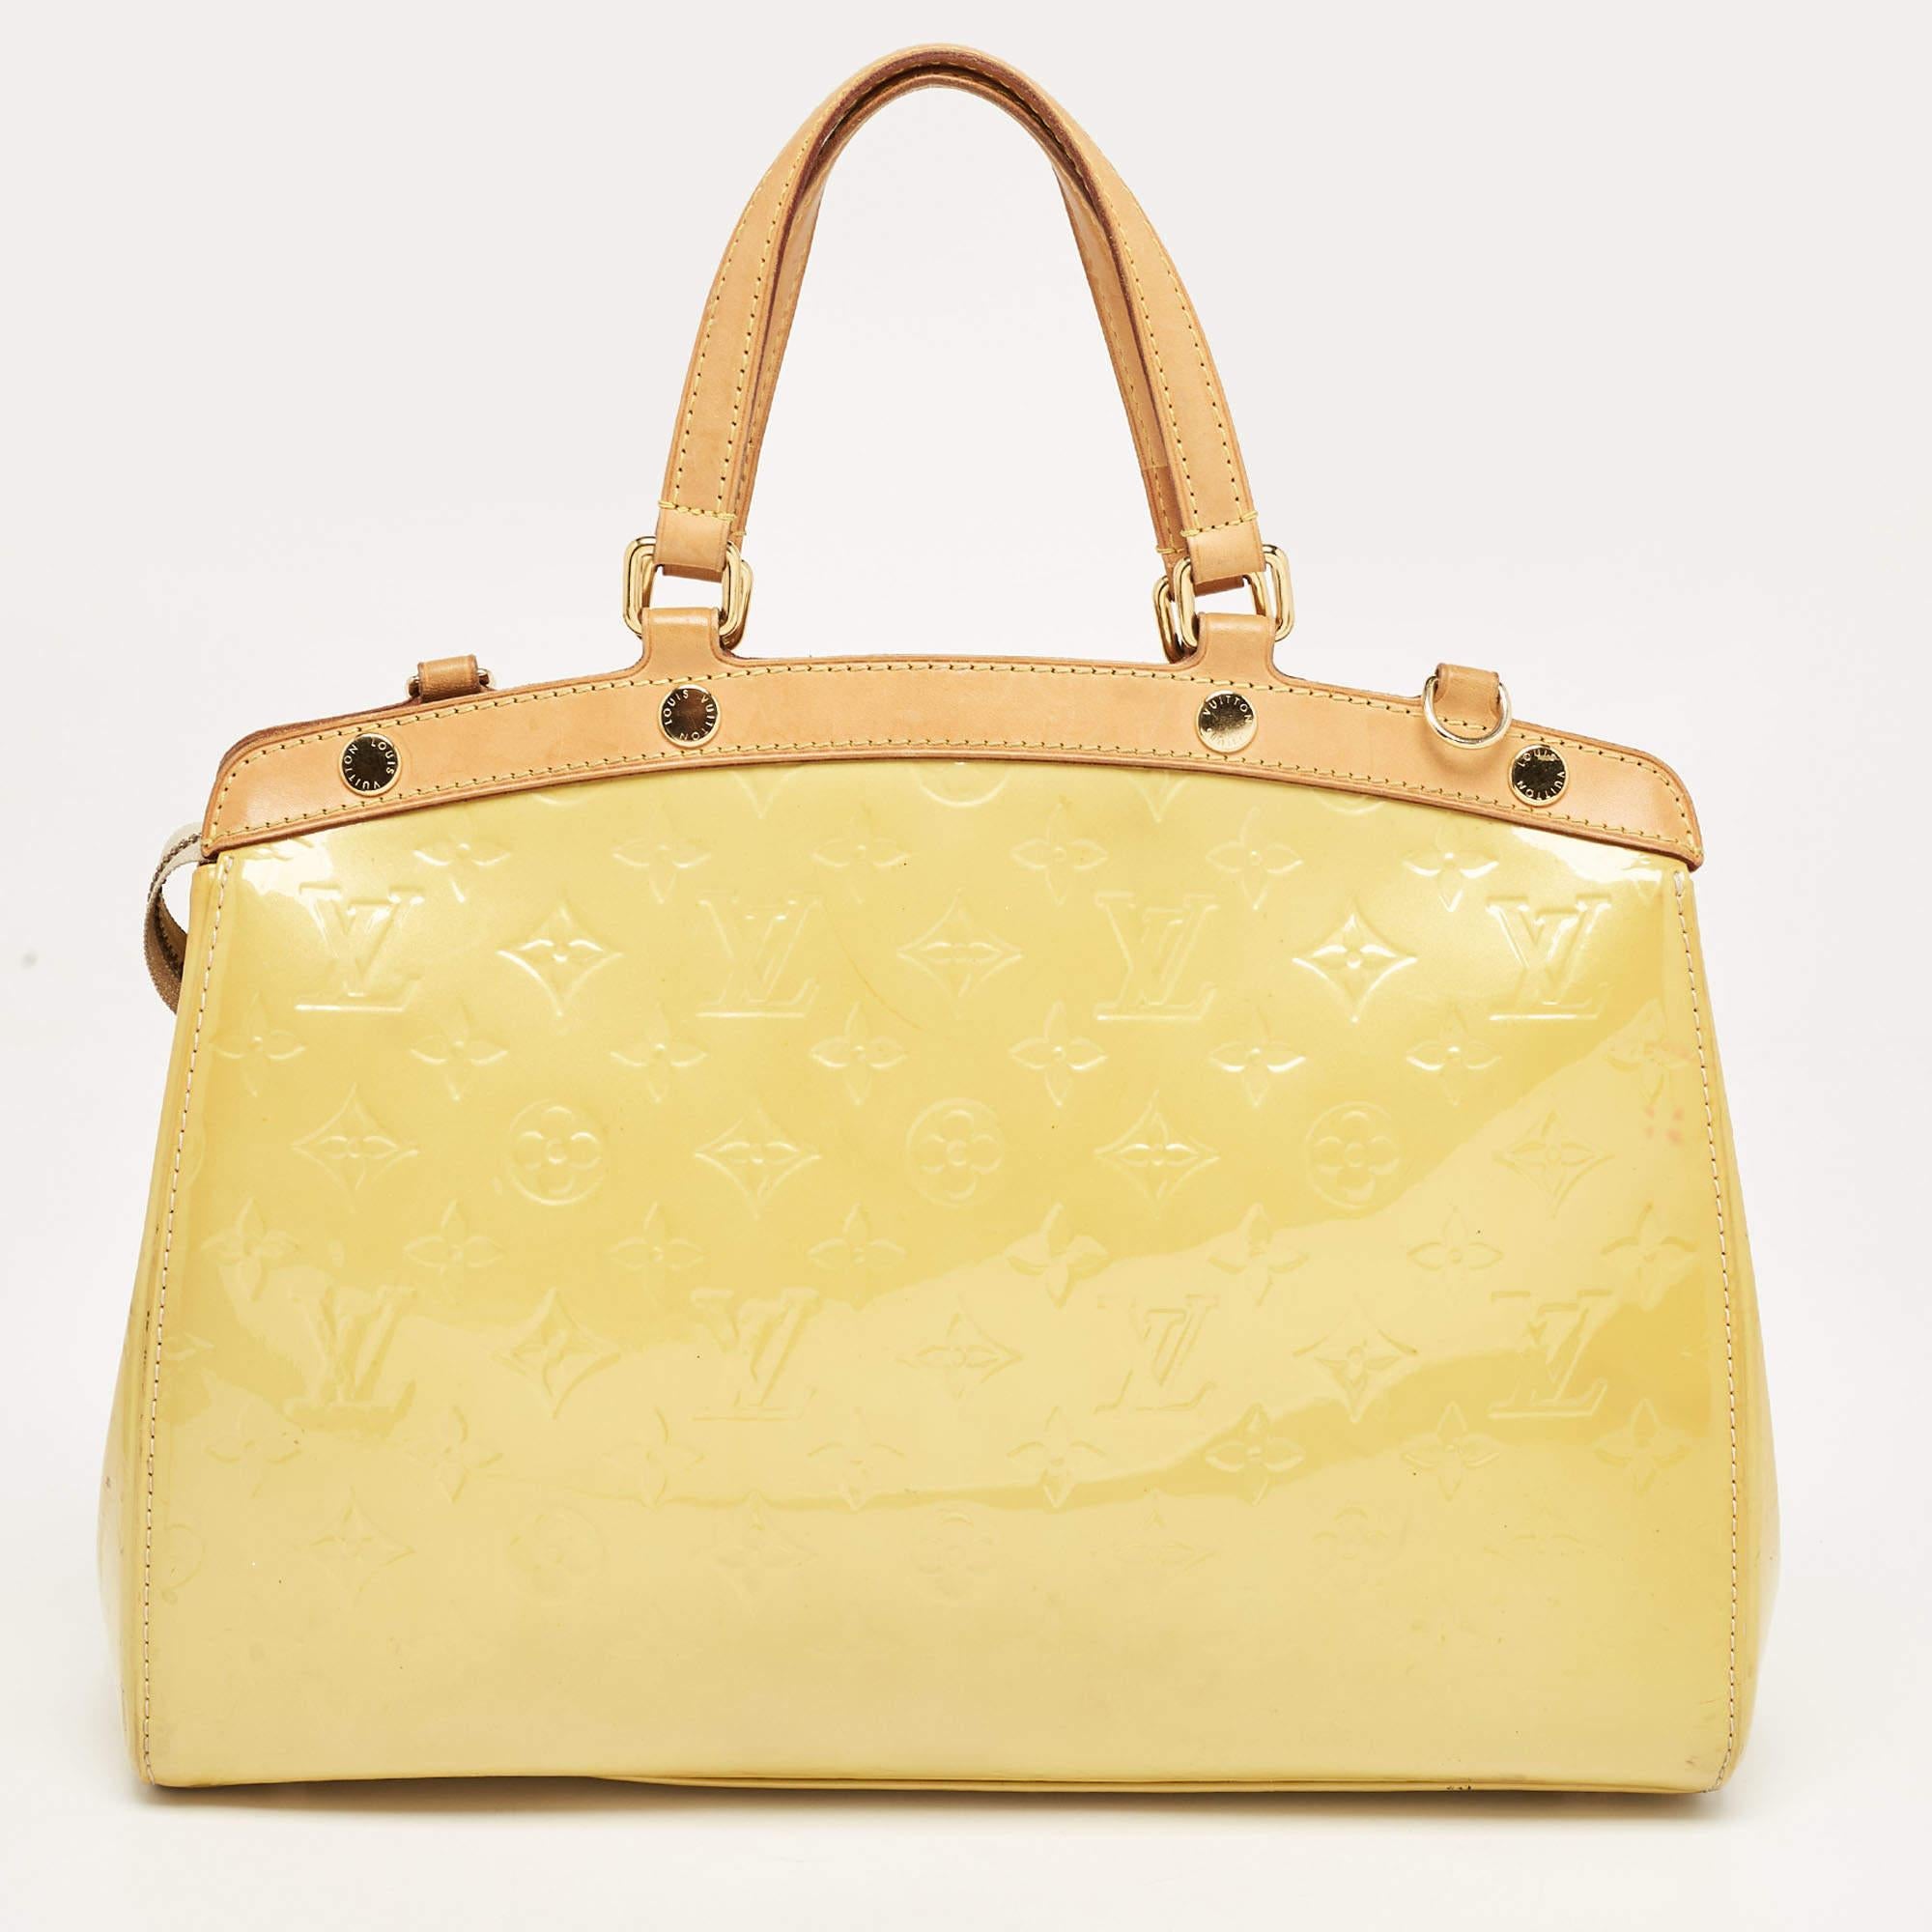 Ce sac Brea MM de la maison Louis Vuitton vous séduira à coup sûr par la précision de sa forme, de son style et de son design. Il est confectionné en Silhouette Jaune Monogram Vernis et présente une silhouette structurée et soignée. Il est doté